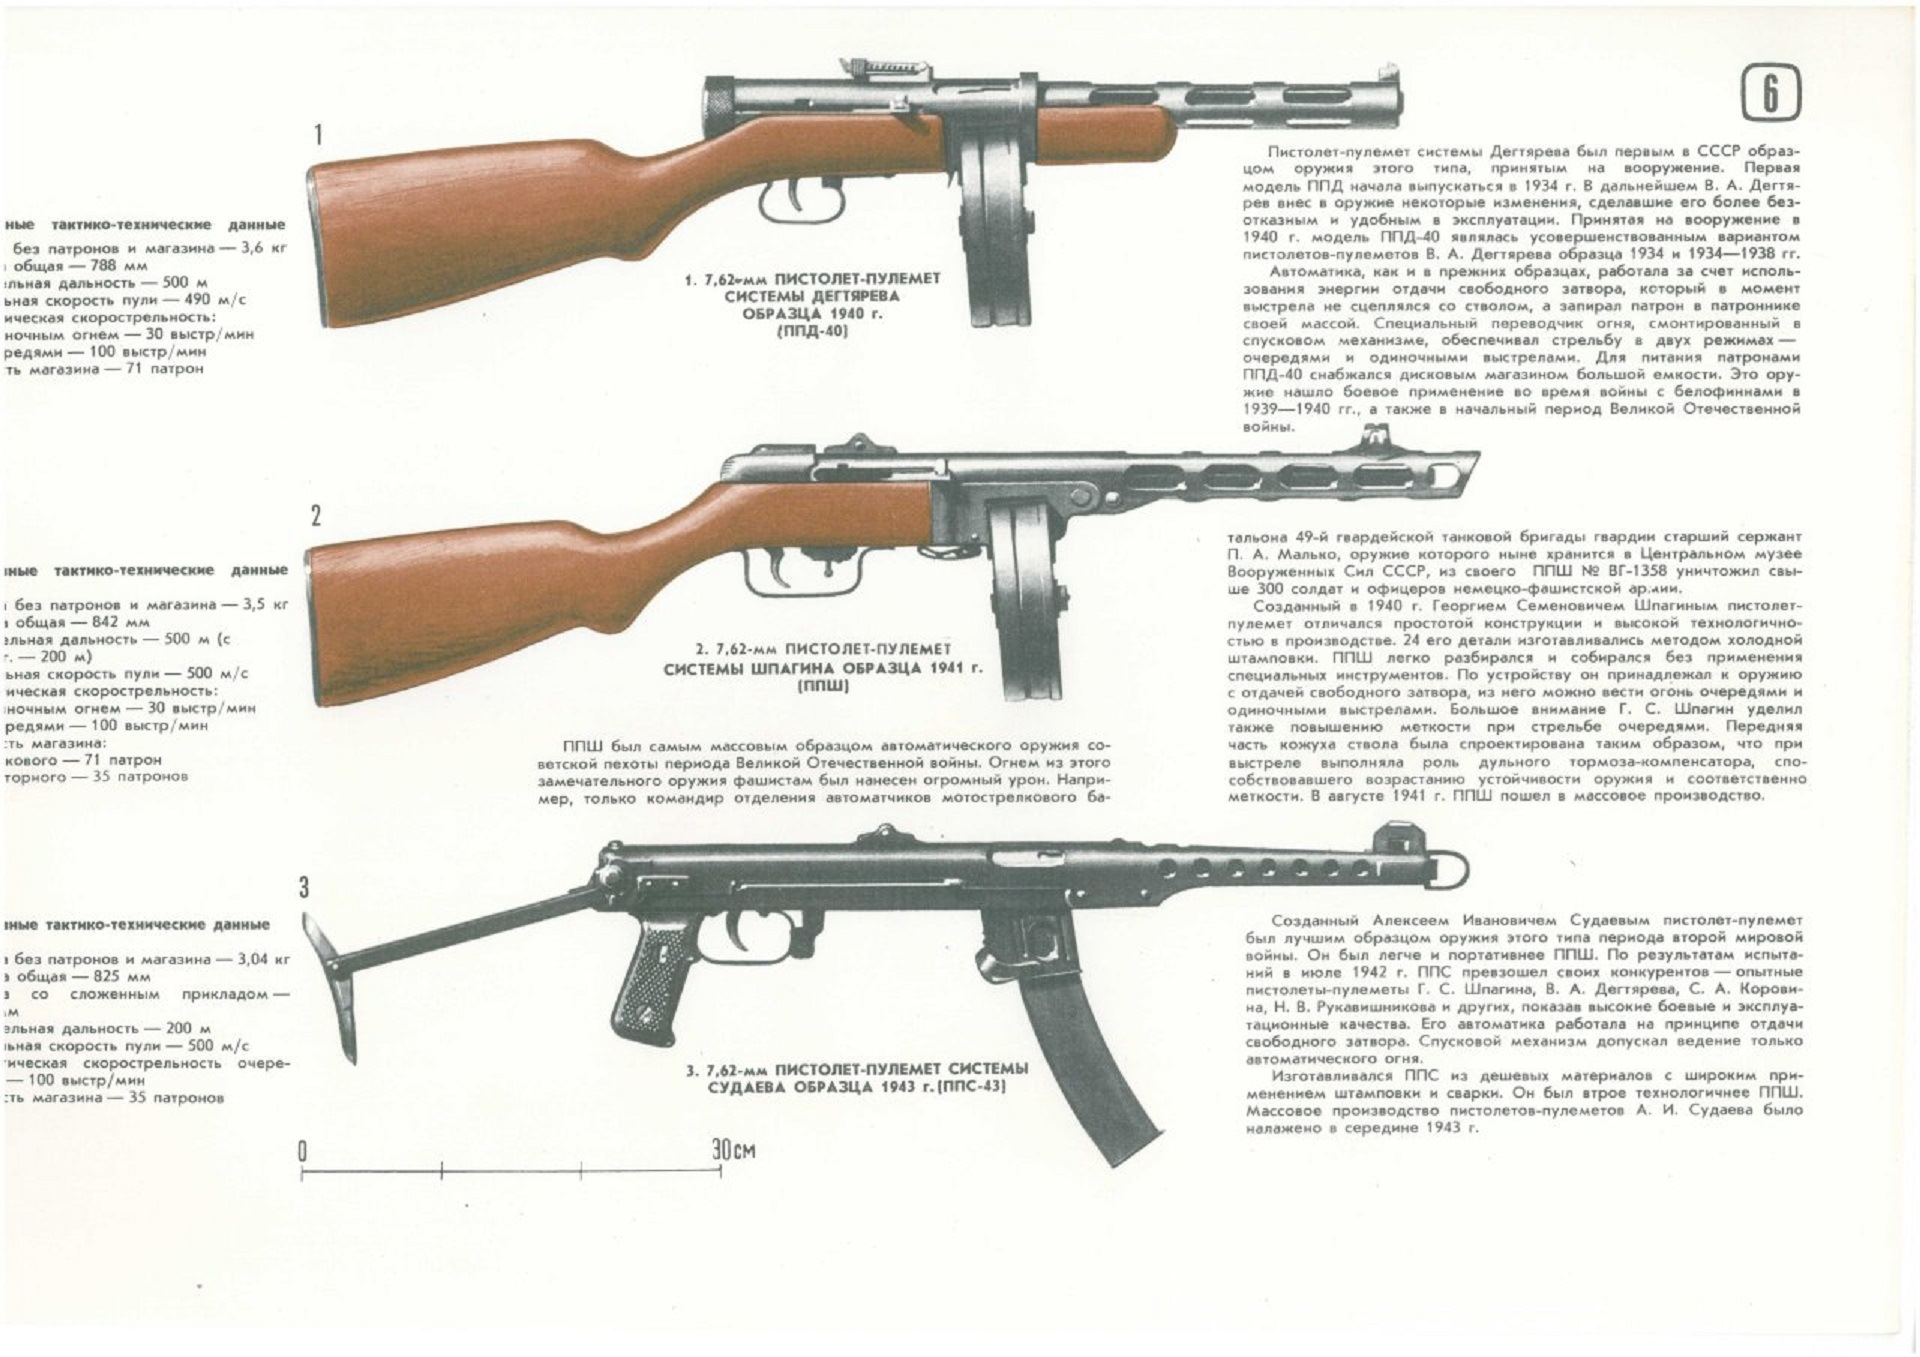 Первый автомат печатает 500 марок за 4. Автомат ППШ 41 характеристики. Схема пистолета-пулемета ППШ-41.